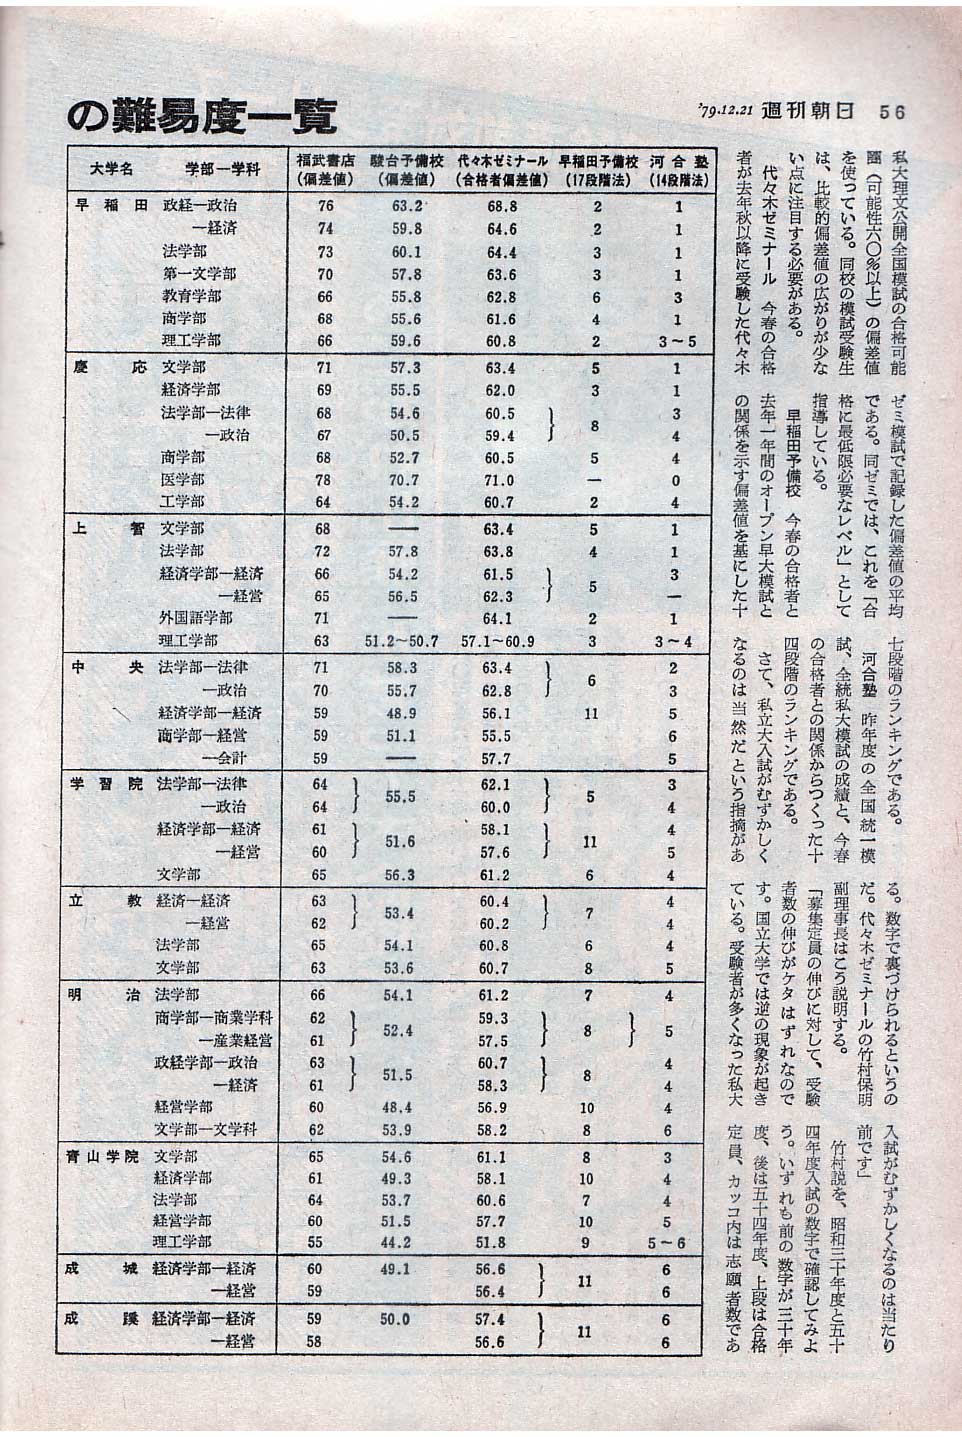 代々木ゼミナール 大学入試データリサーチ 1995年 偏差値ランキング